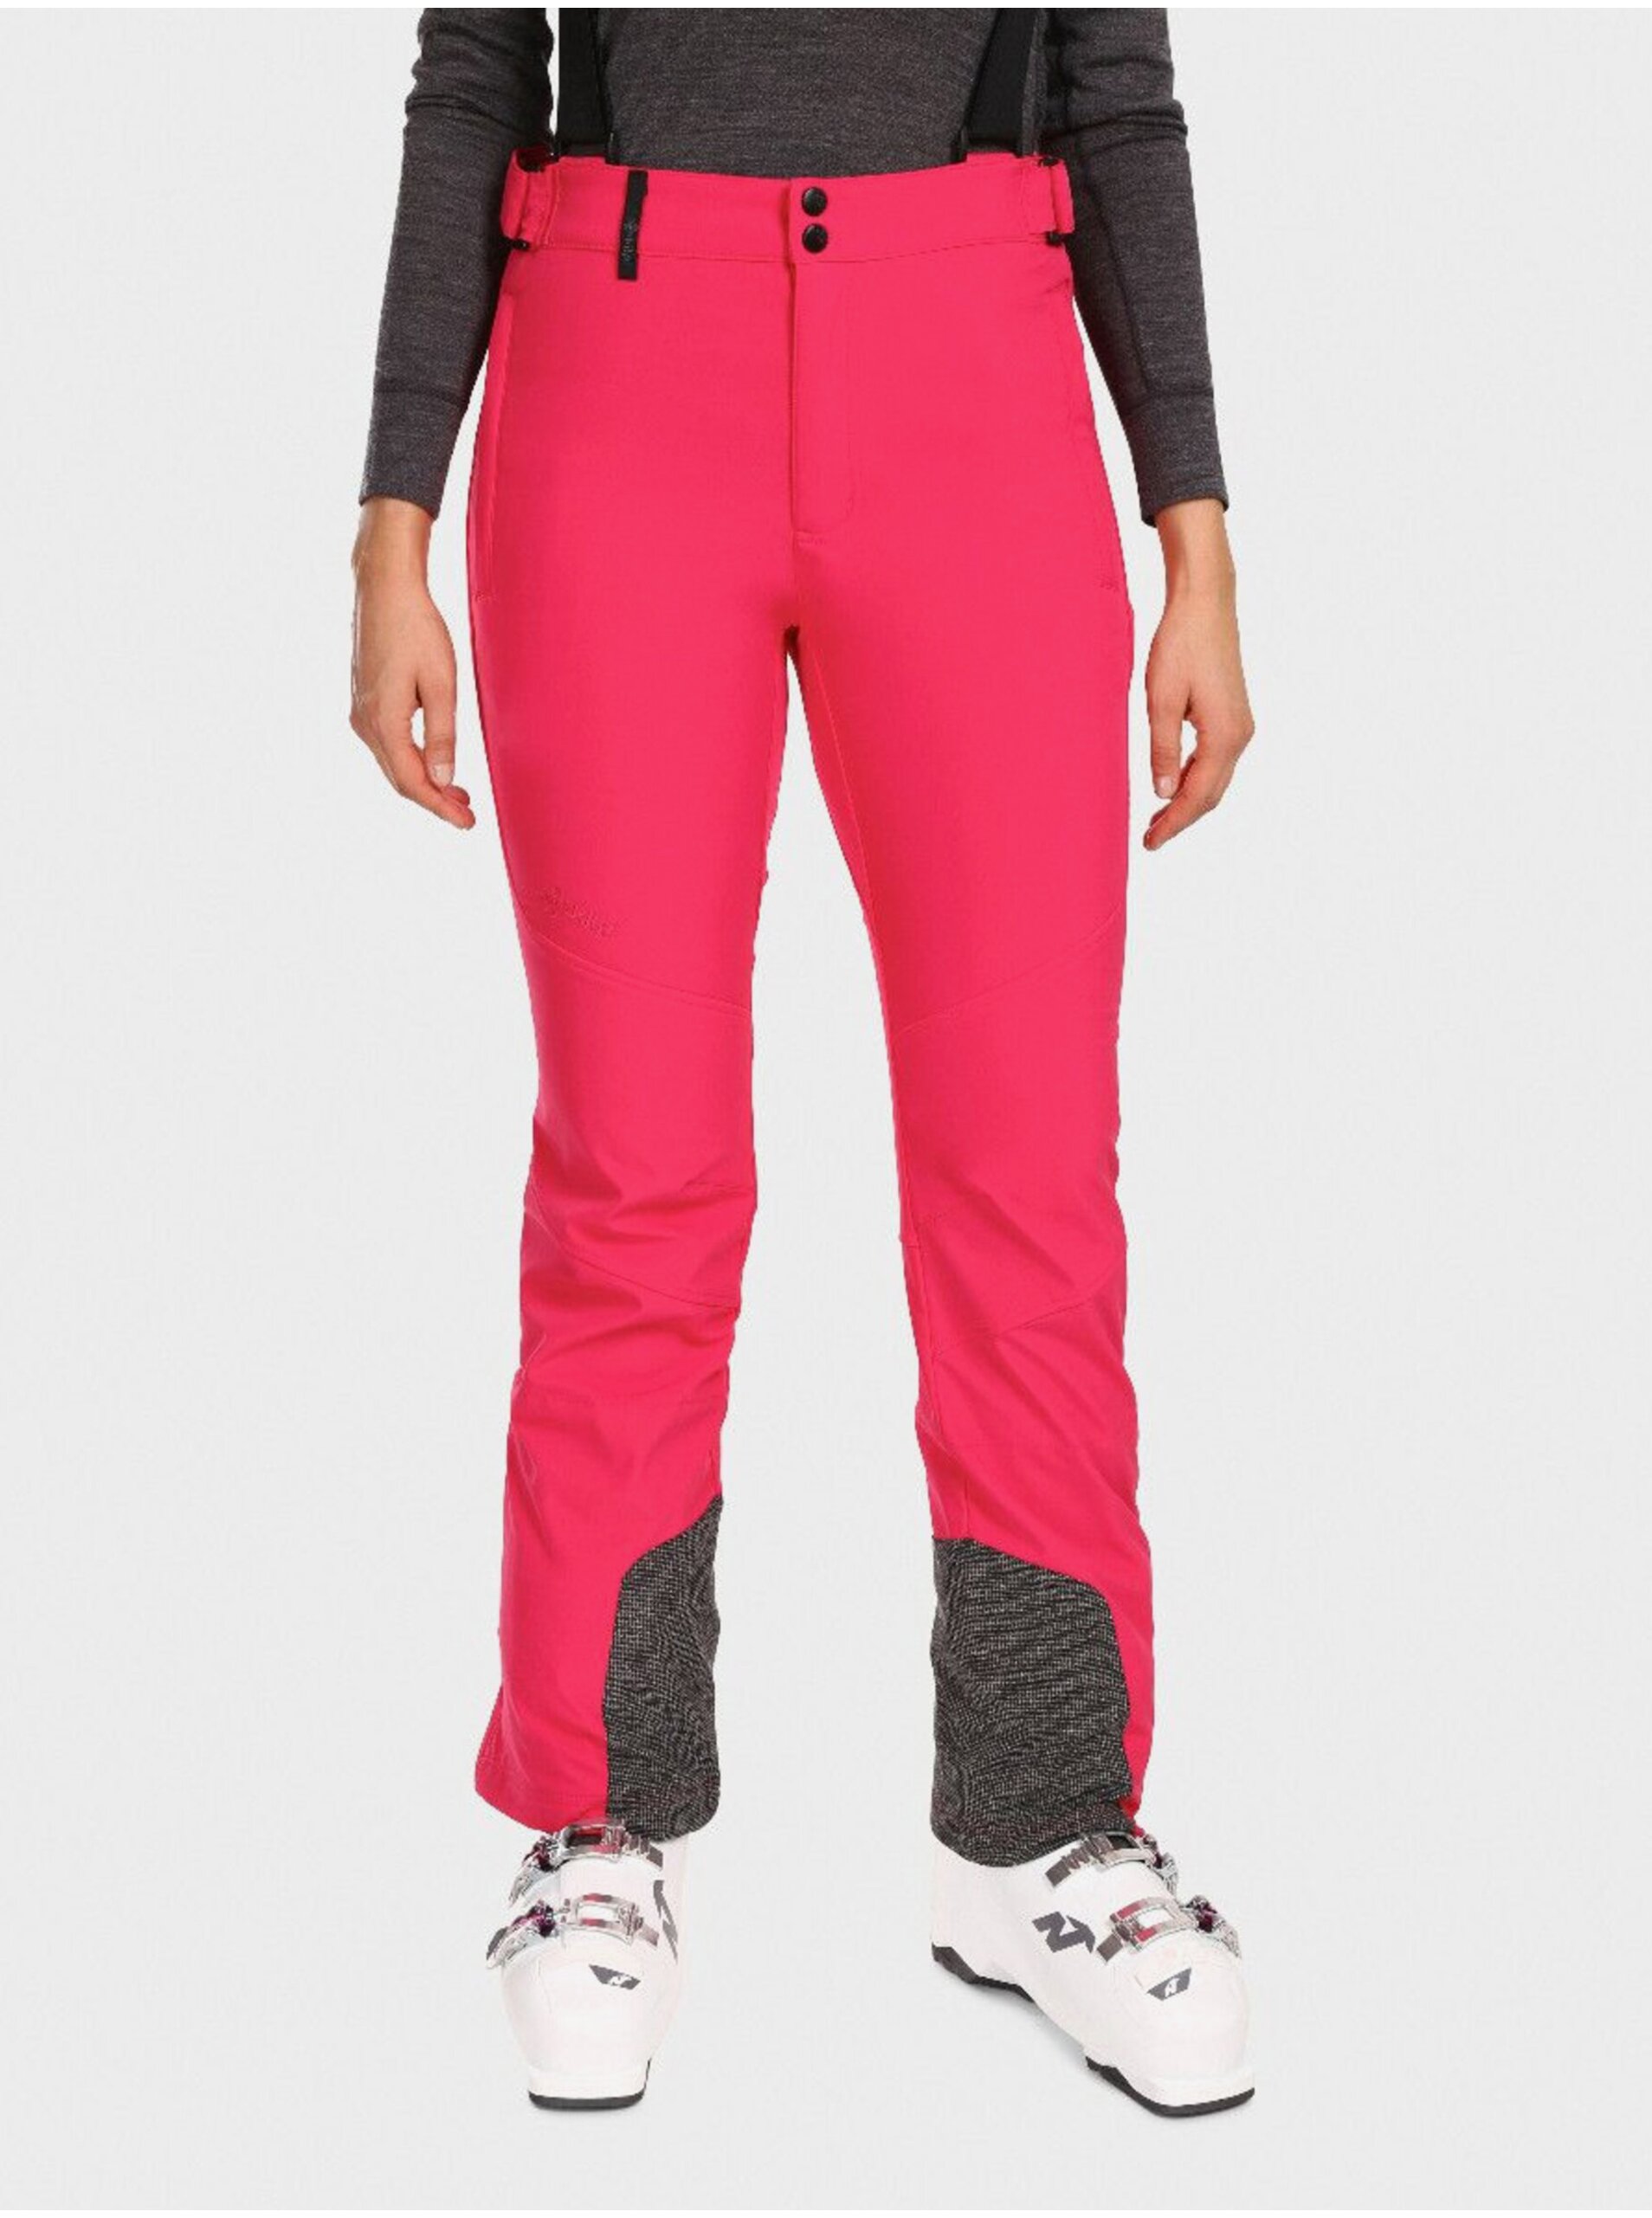 E-shop Tmavě růžové dámské softshellové lyžařské kalhoty Kilpi RHEA